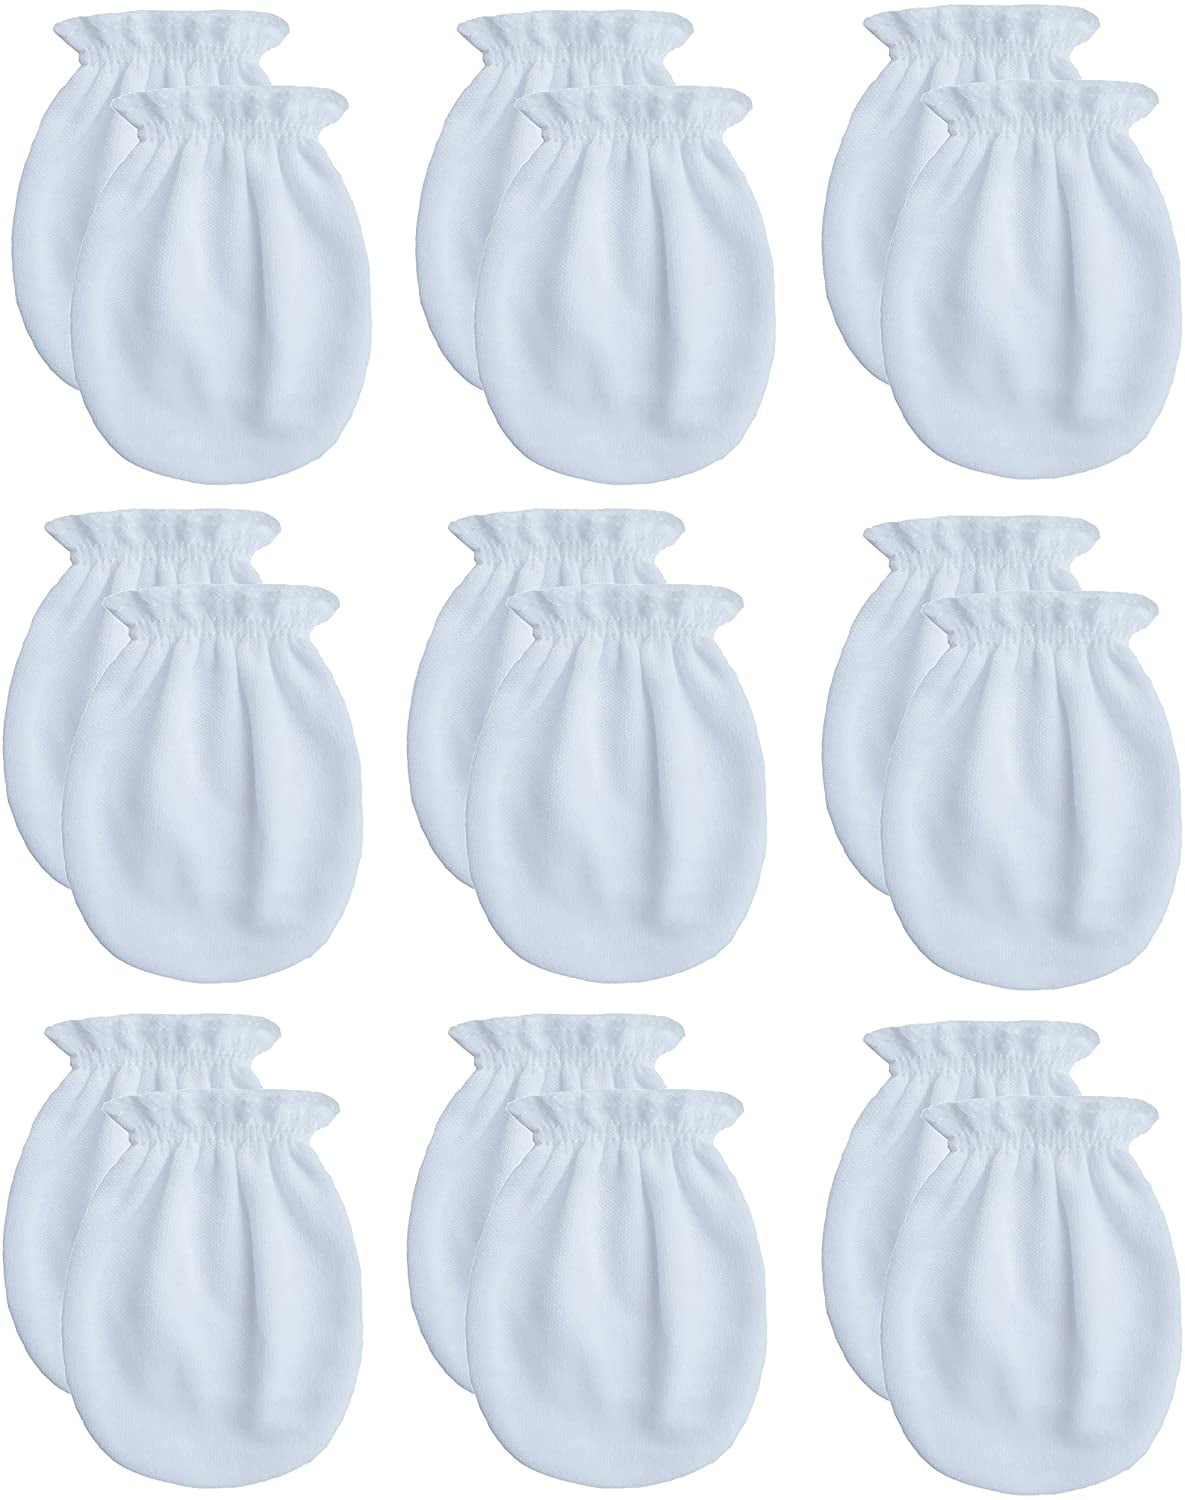 Newborn 0-6 Months, 3white+3pink RATIVE Newborn Baby Cotton Gloves No Scratch Mittens For 0-6 Months Boys Girls